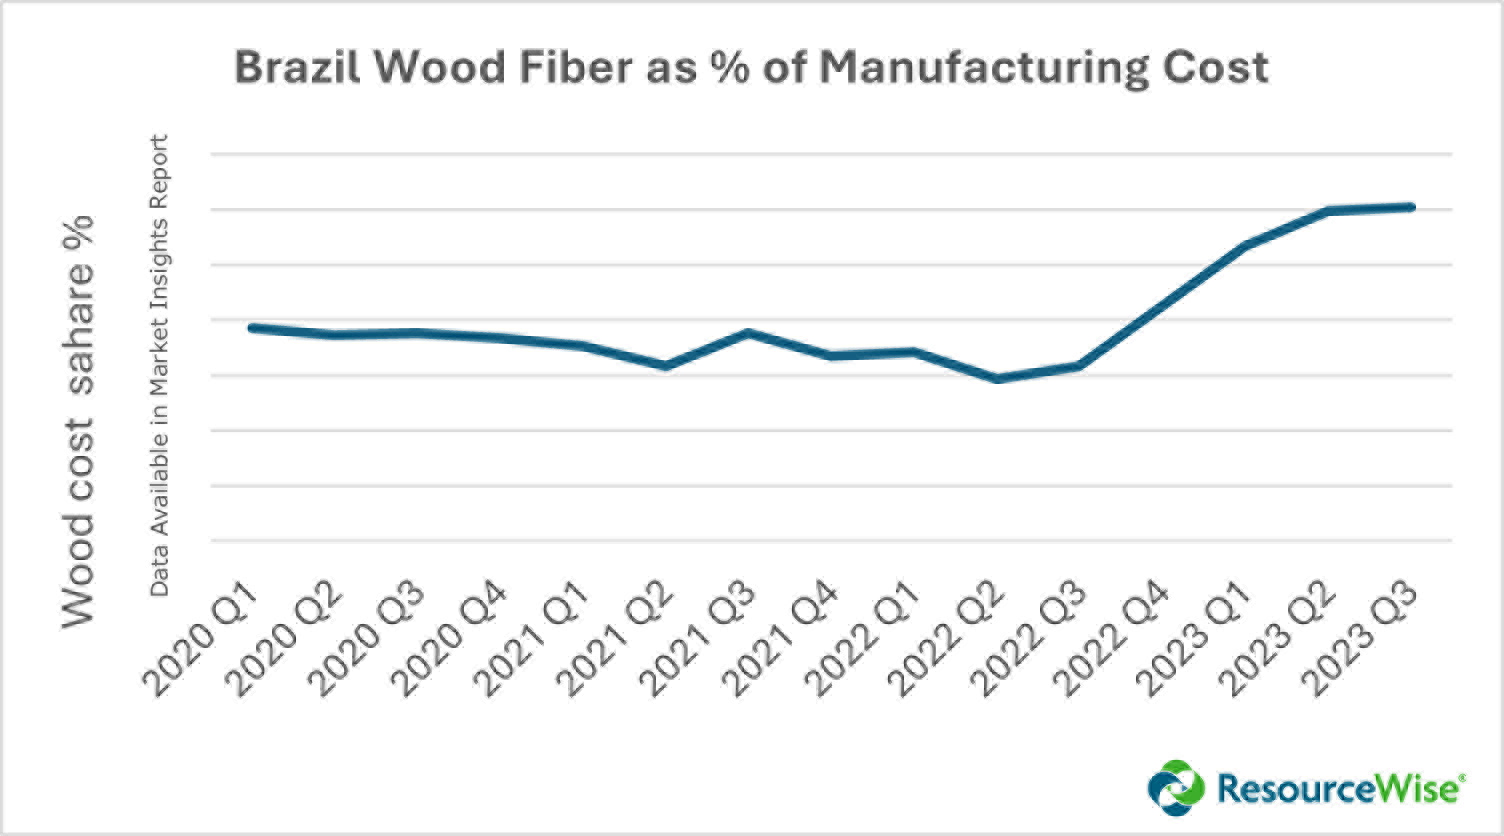 An Overview of Brazil’s Wood Fiber Market